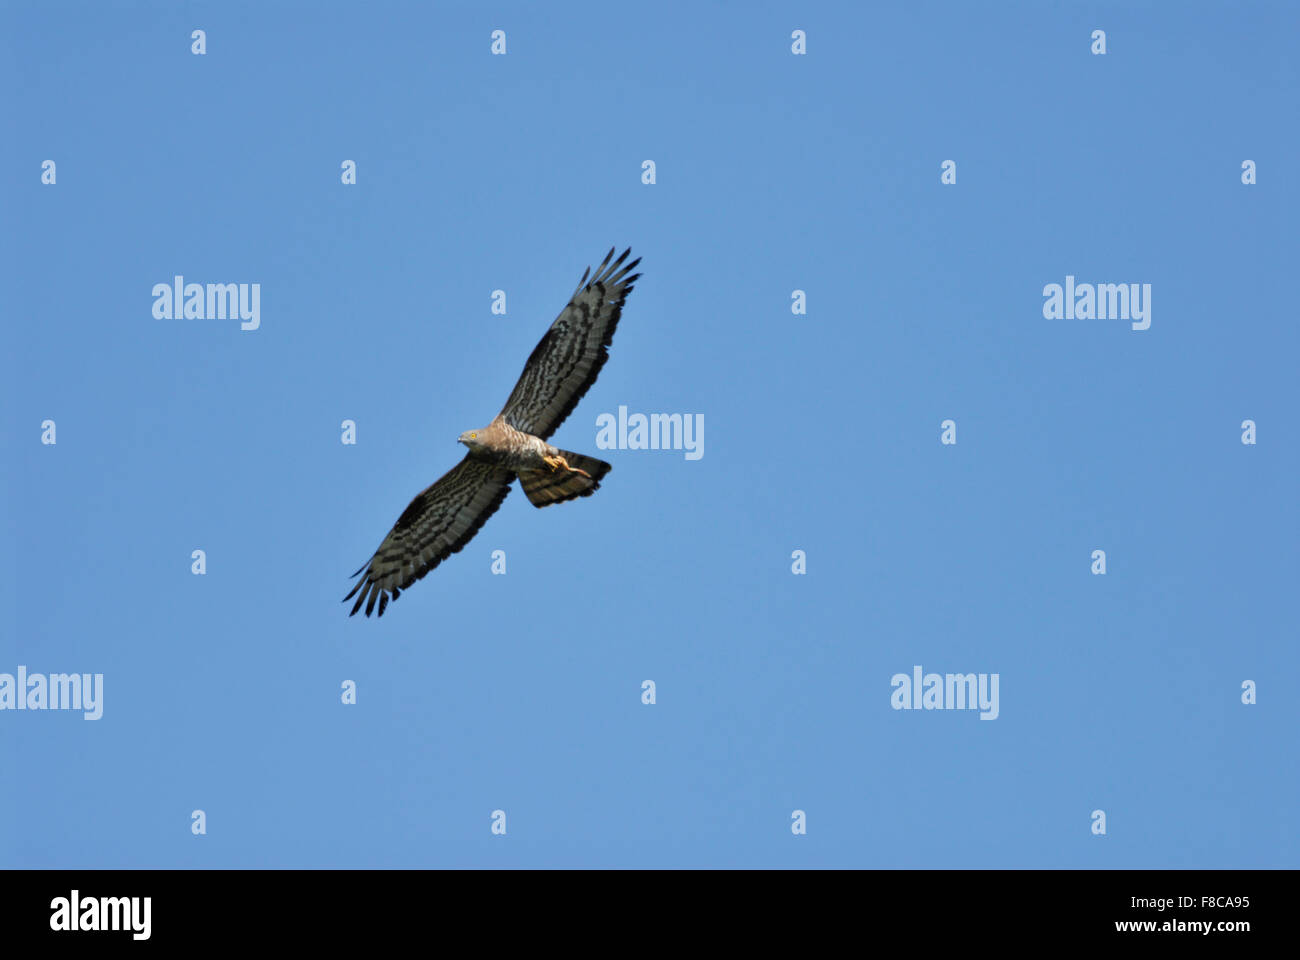 Wespenbussard / Wespenbussard (Pernis Apivorus) während des Fluges mit Beute in seinen Krallen gegen blauen Himmel. Stockfoto